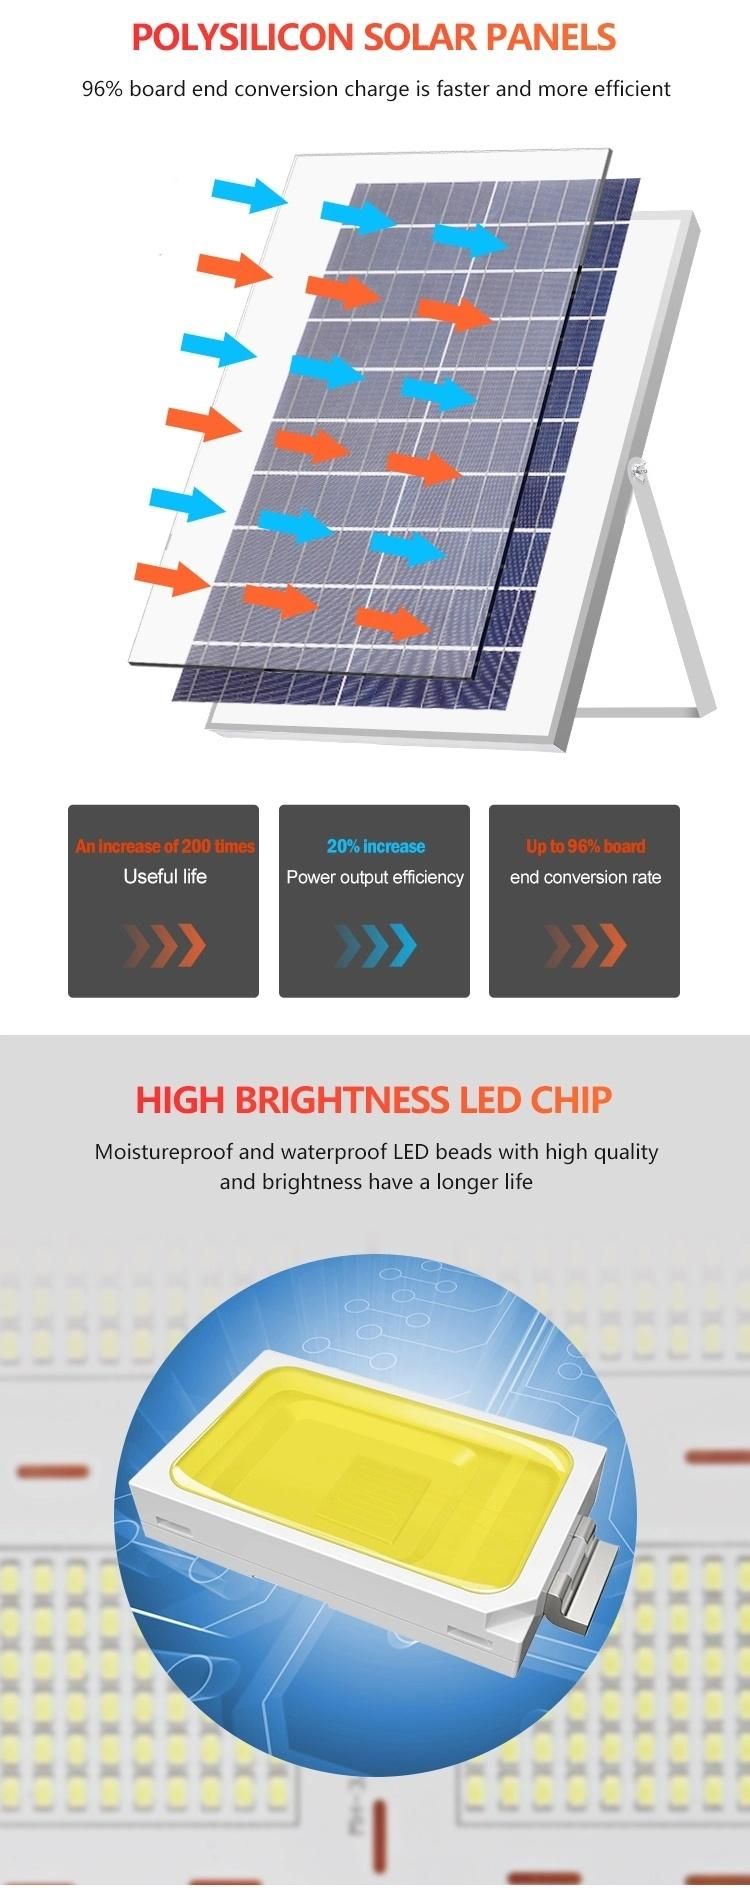 Manufacturers 100 Watt Outdoor Solar LED Street Light